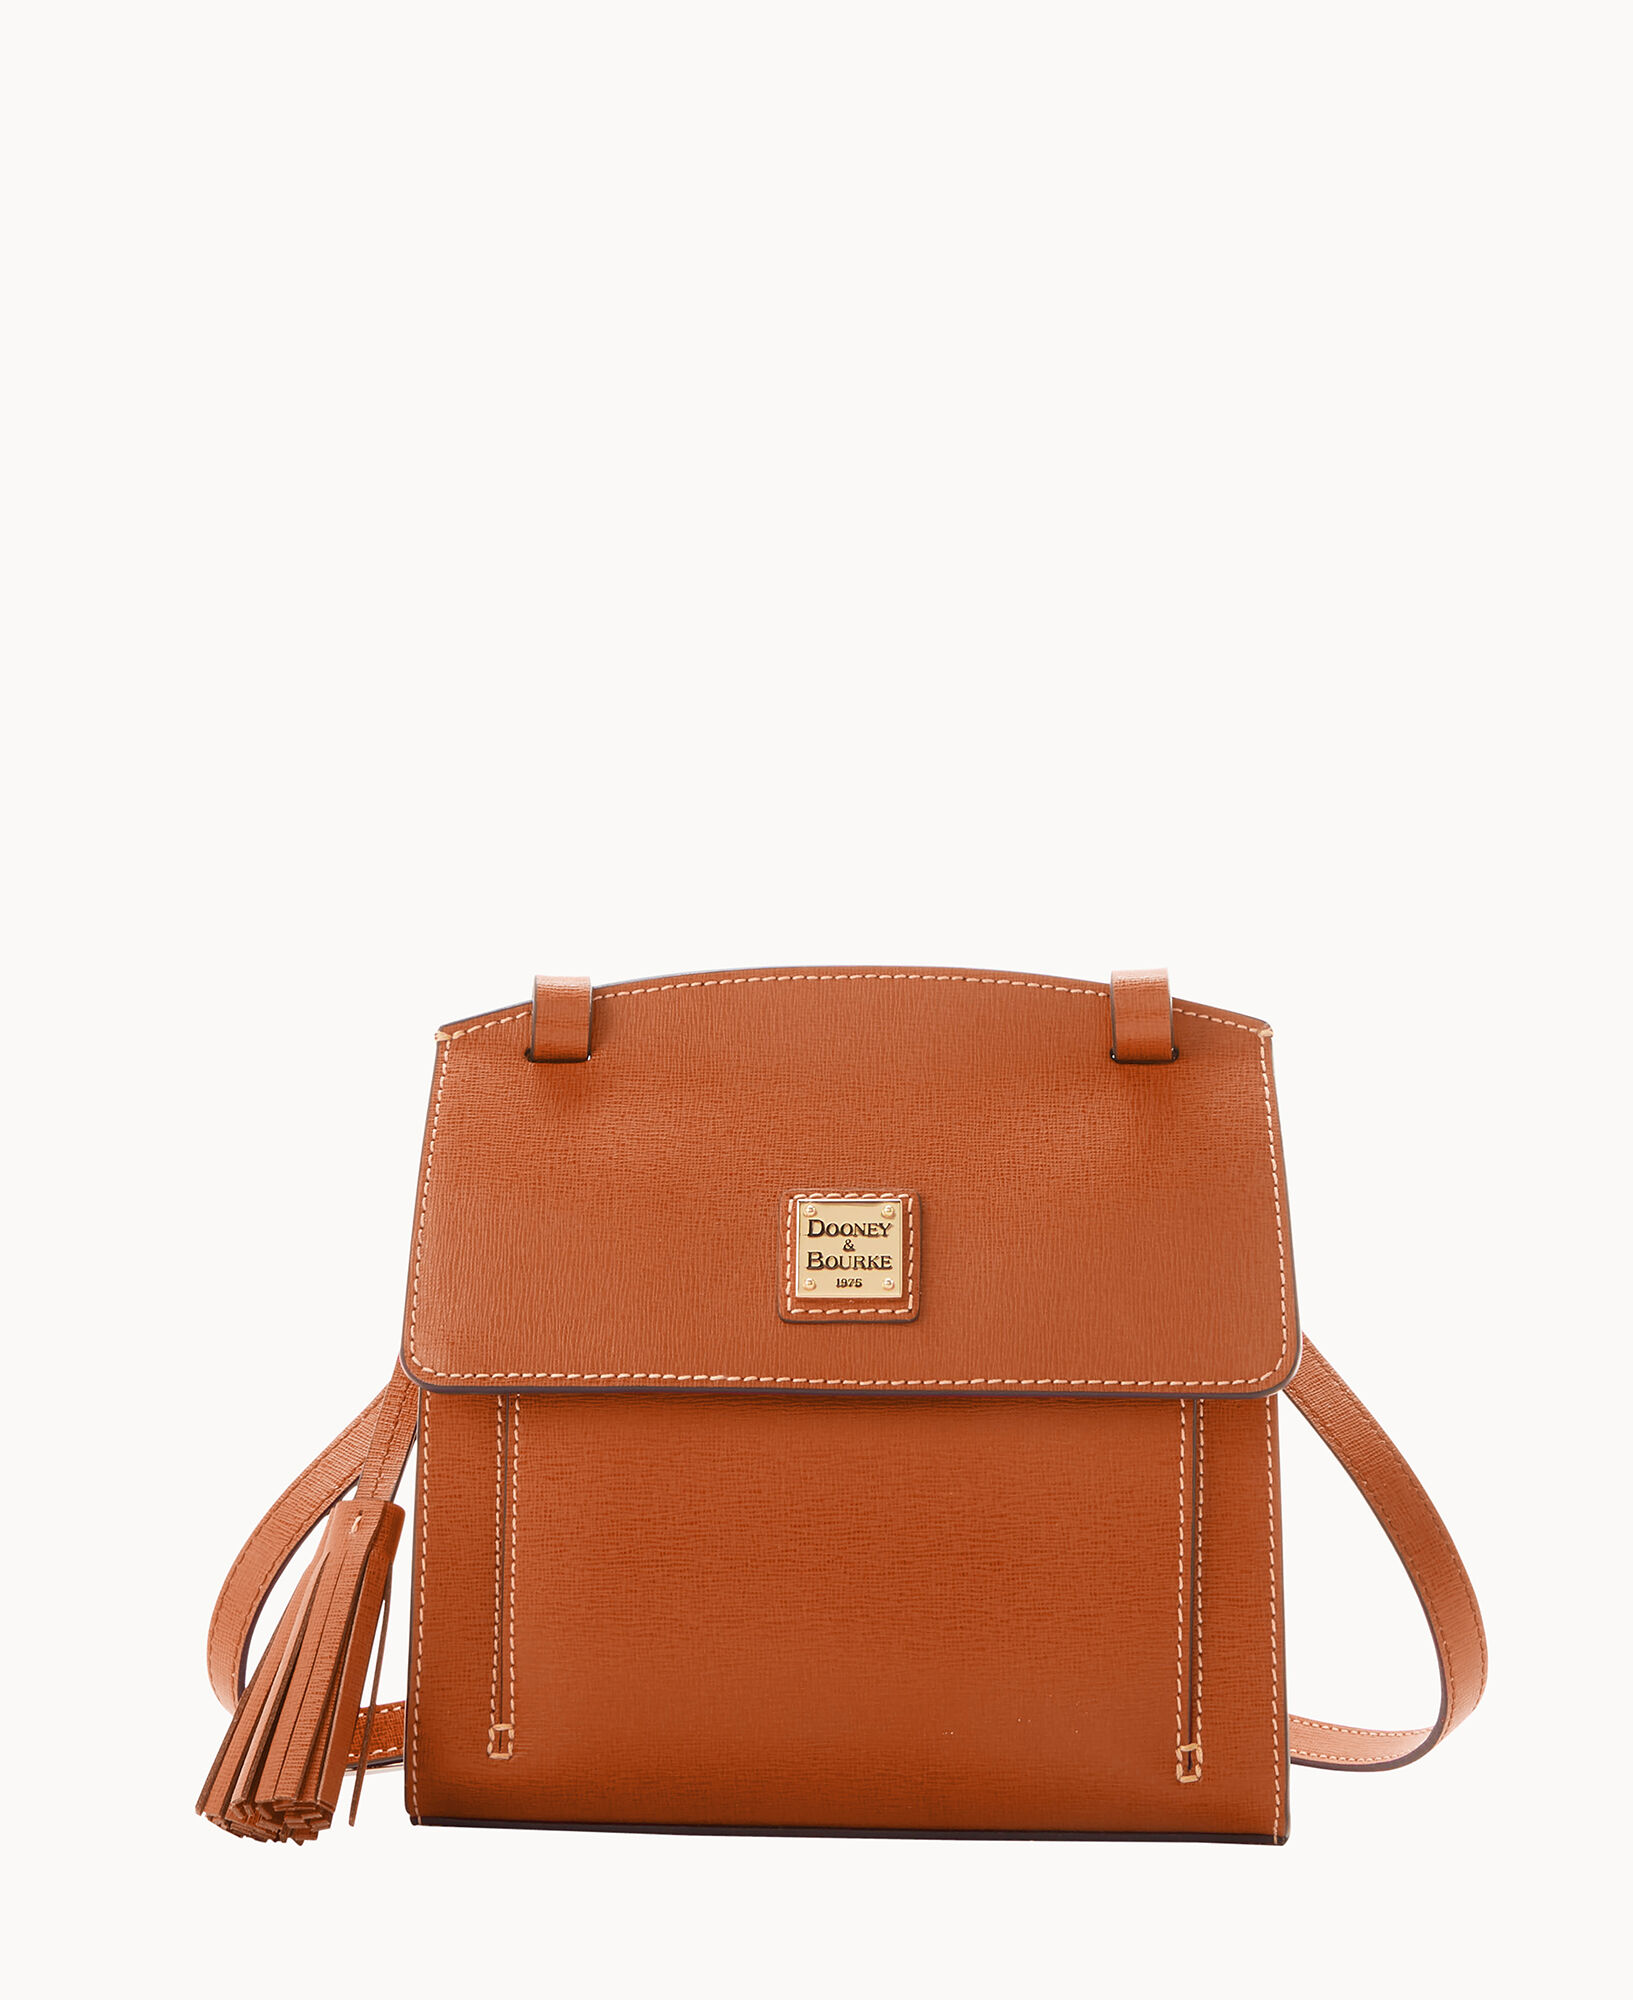 Dooney & Bourke Saffiano Sawyer Apricot Leather Crossbody Bag